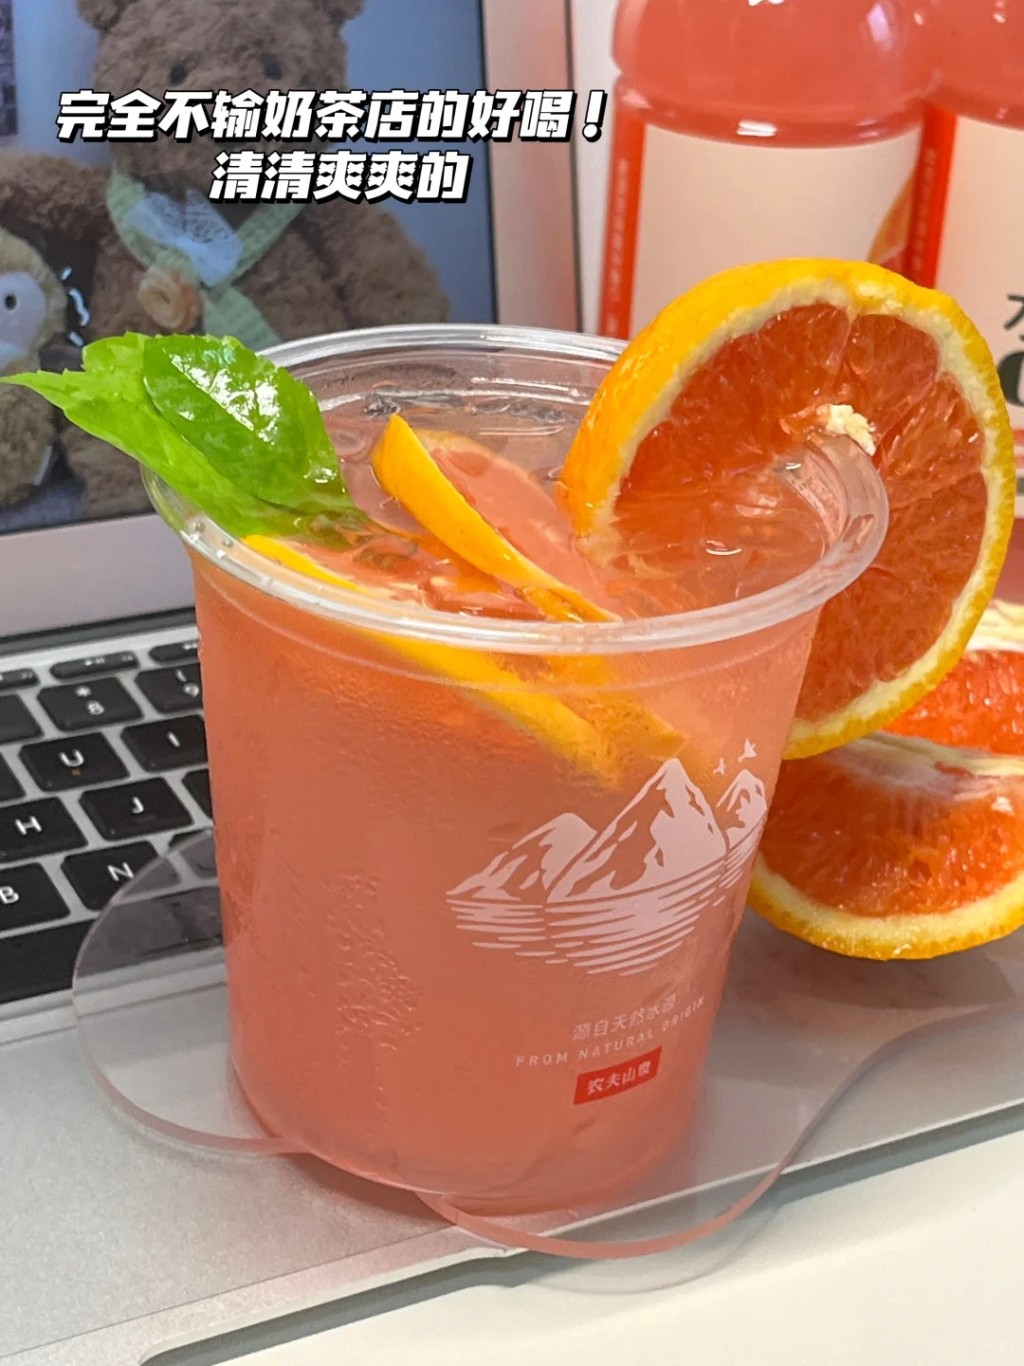 内地社交平台有许多网民分享用「冰杯」调制消暑饮品的方法。